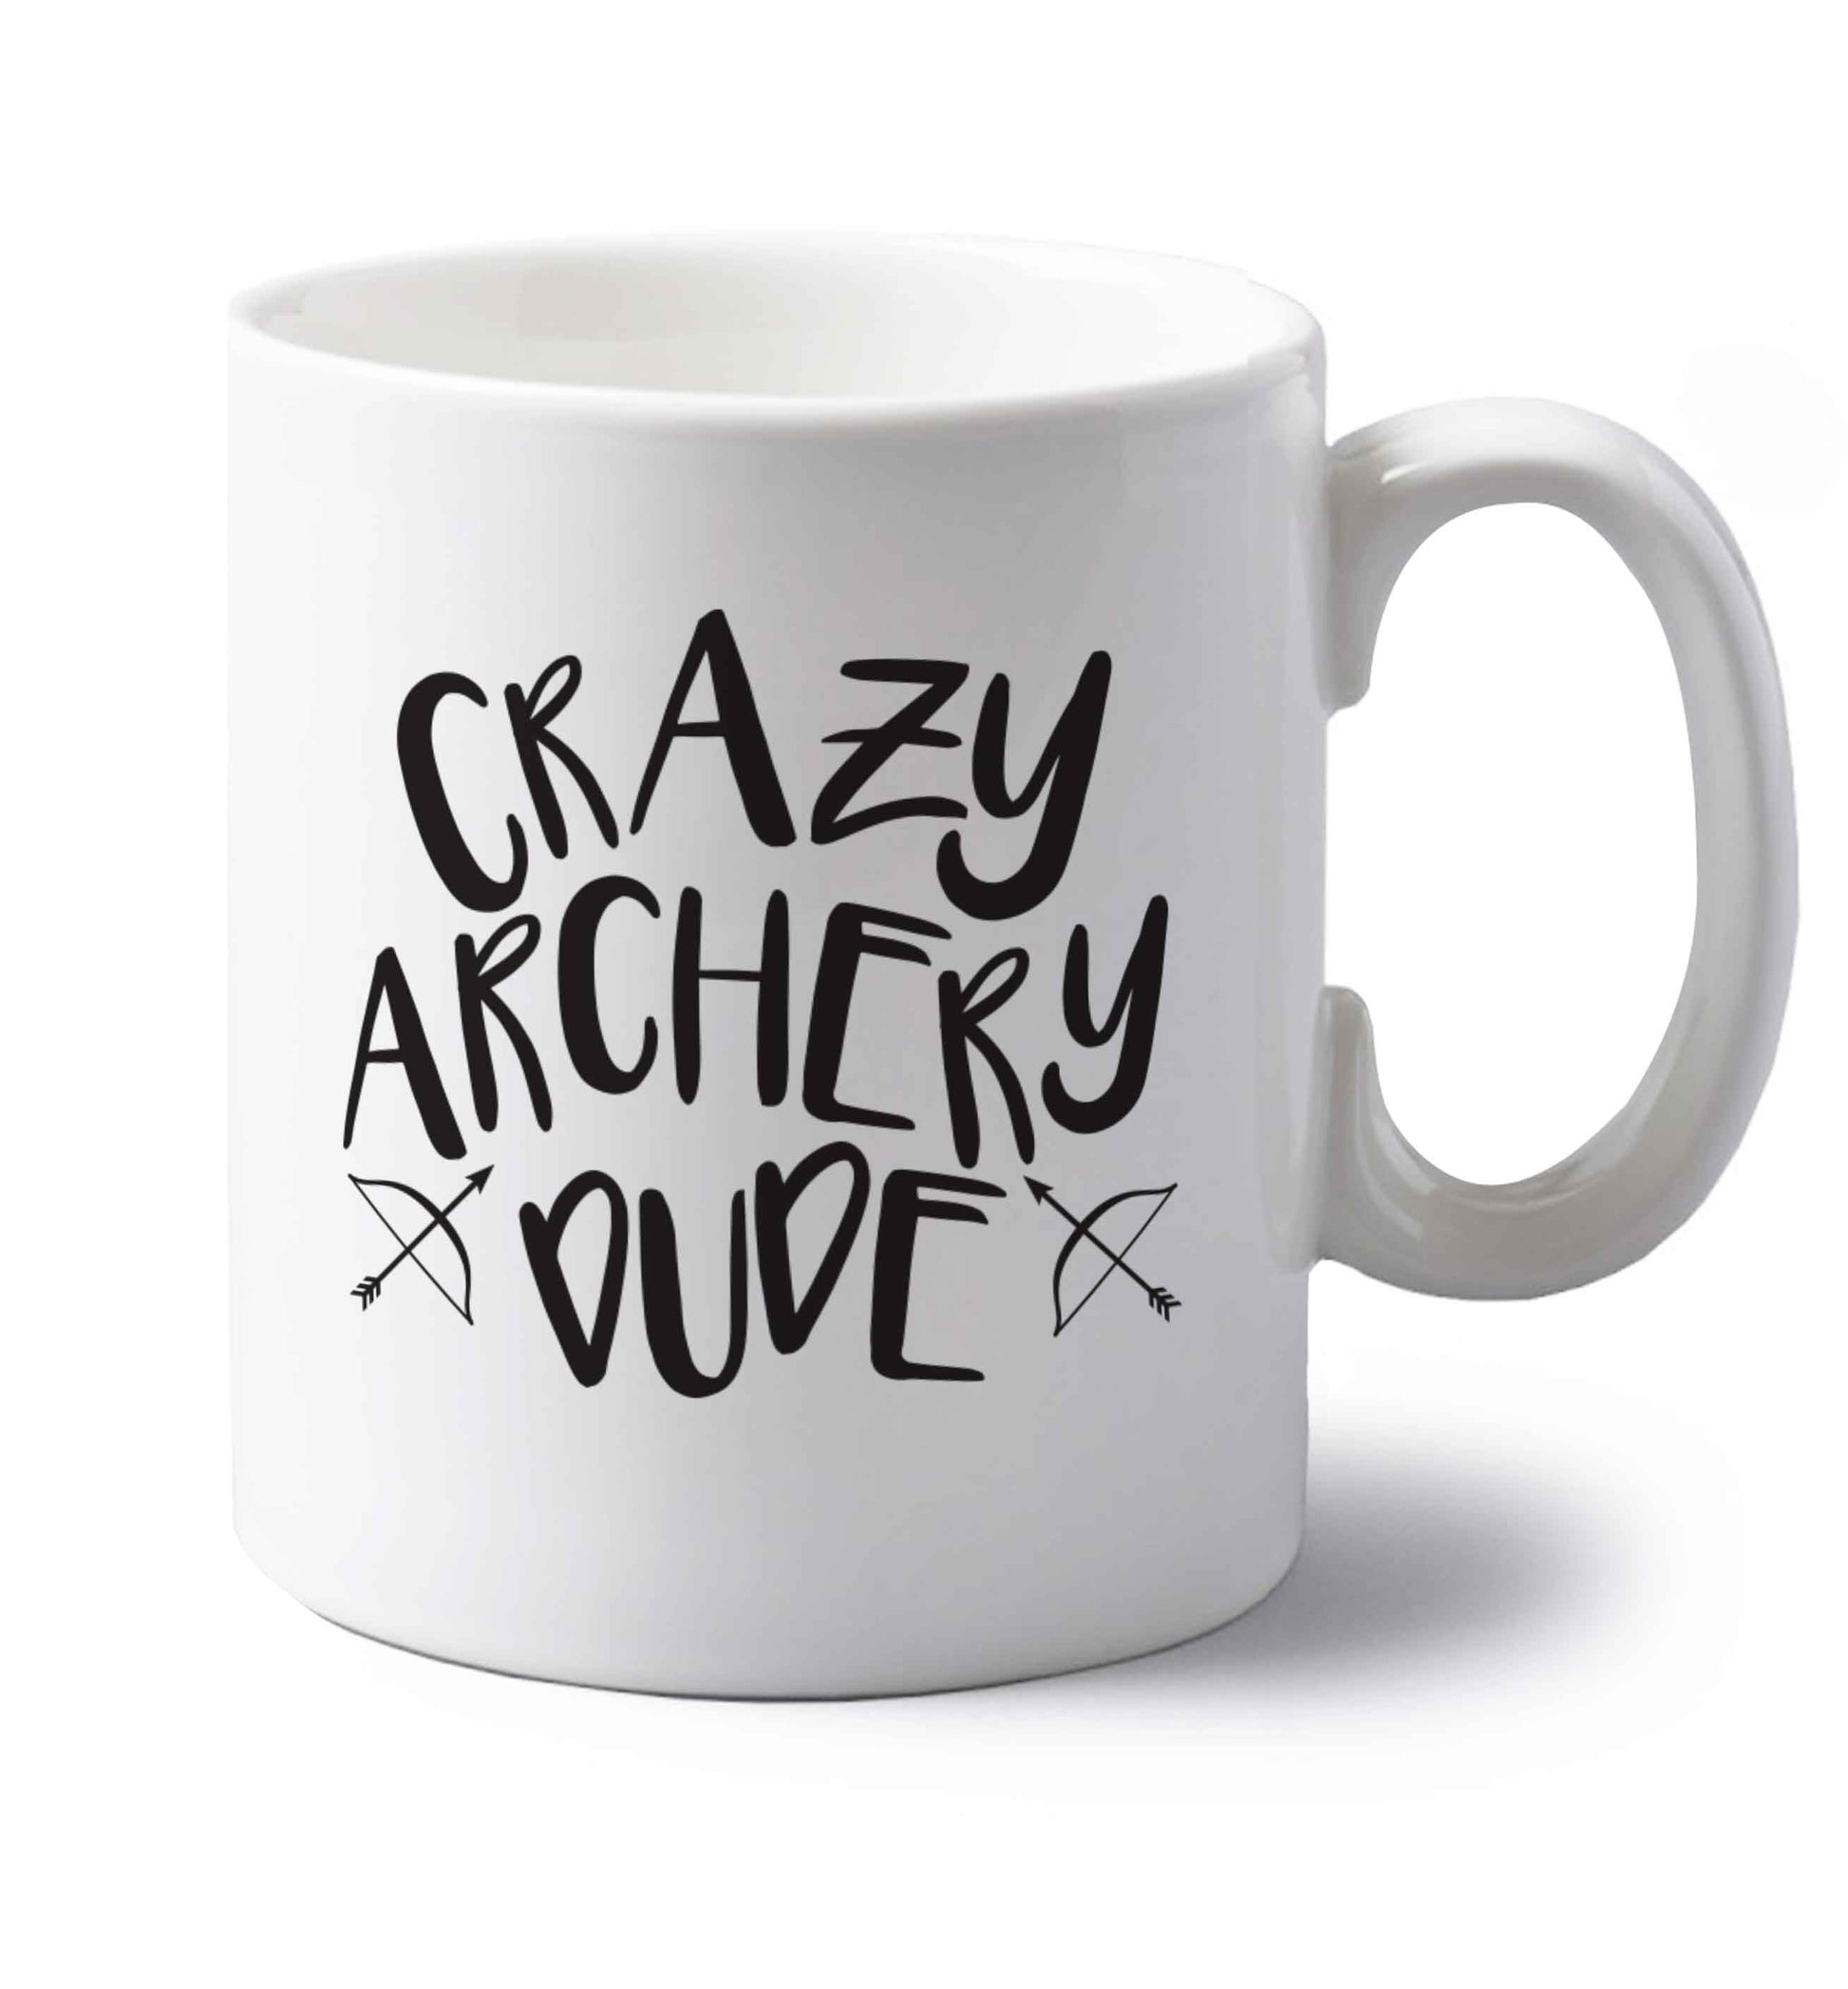 Crazy archery dude left handed white ceramic mug 